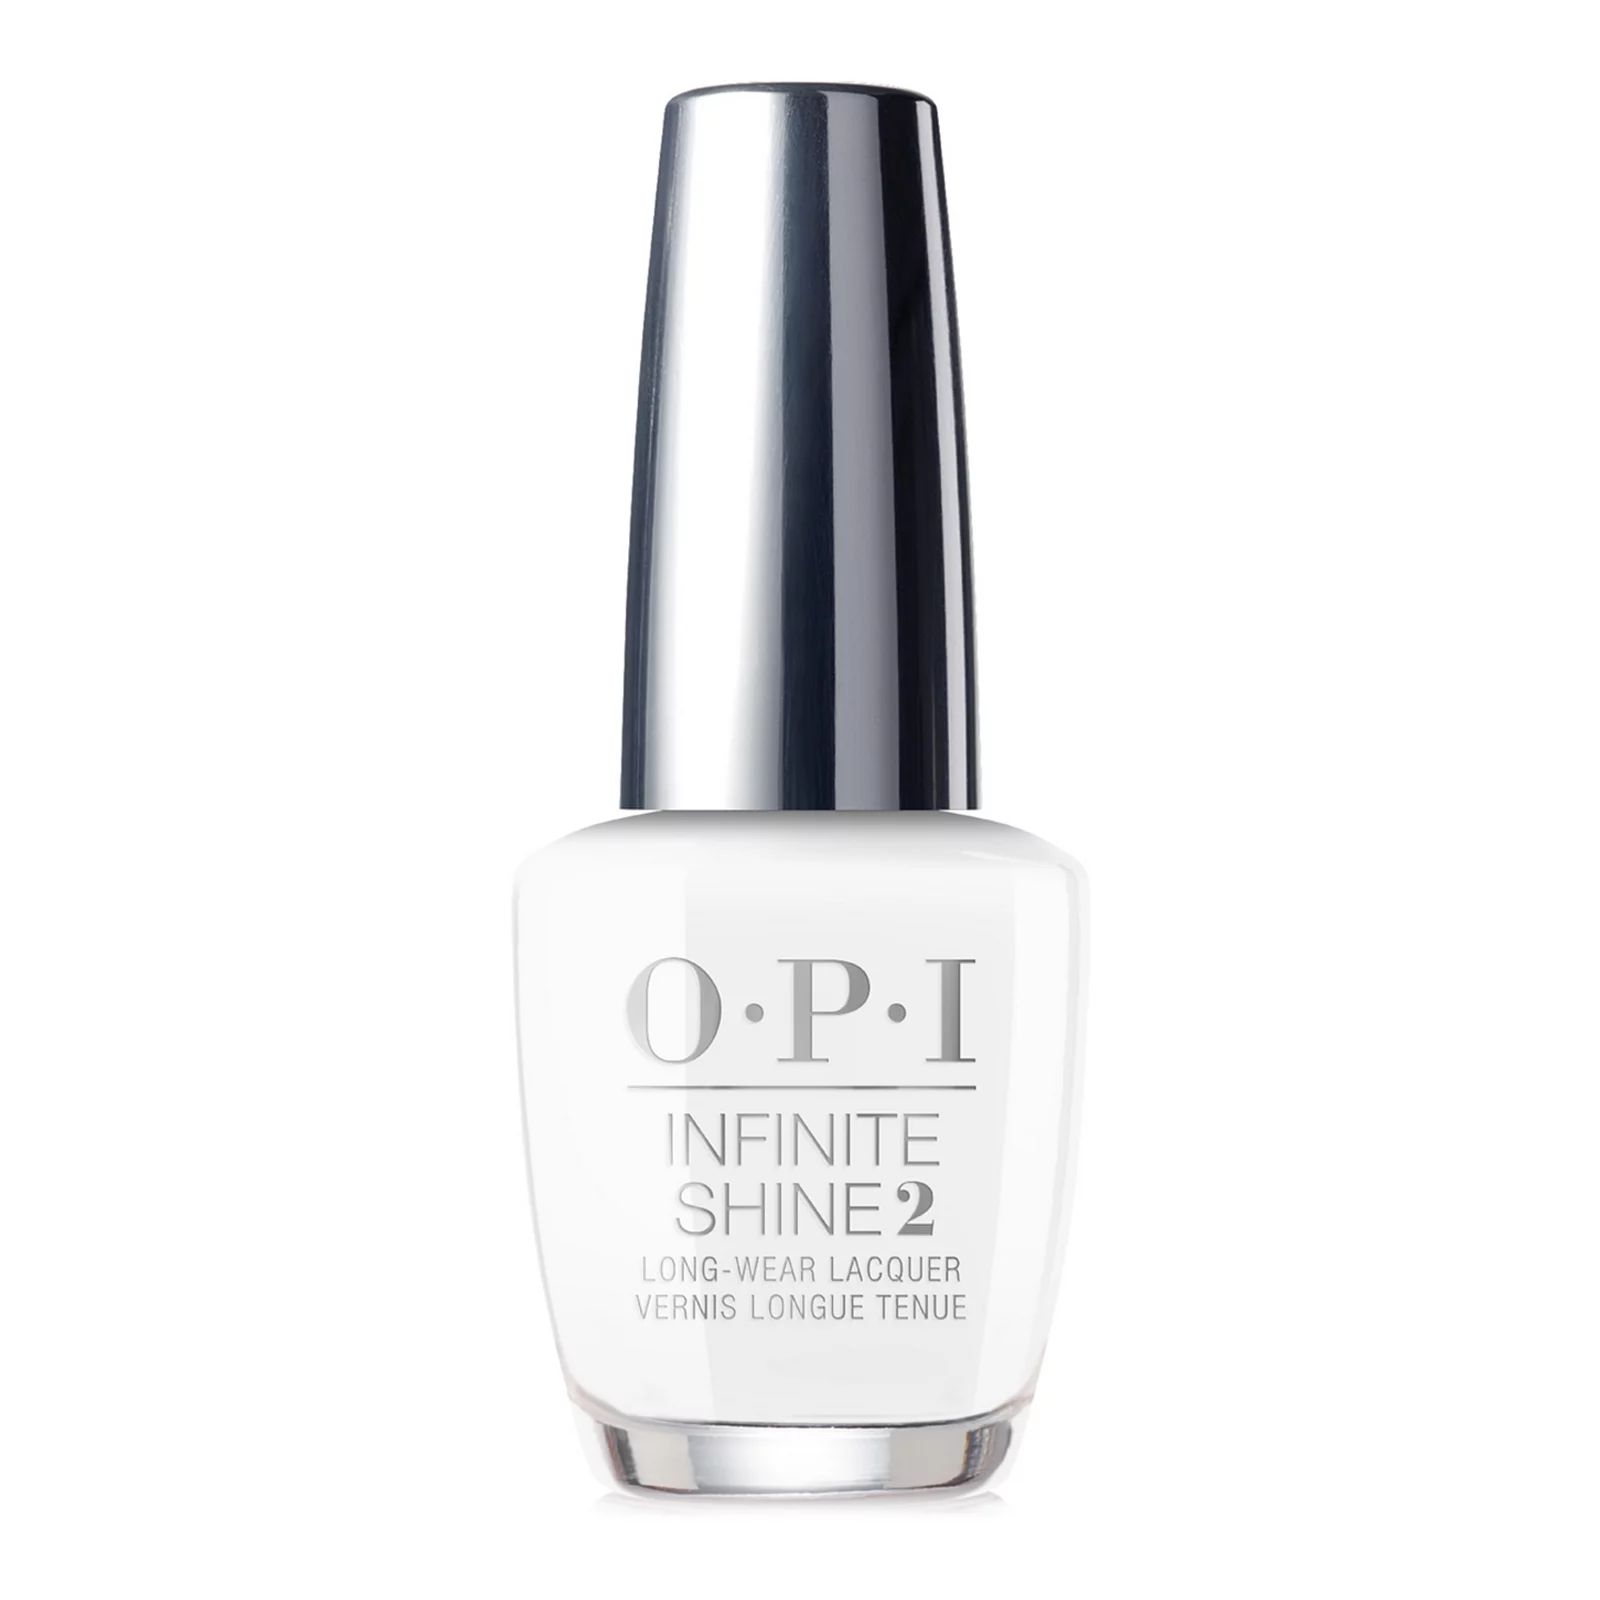 OPI Infinite Shine Nail Polish, White | Kohl's